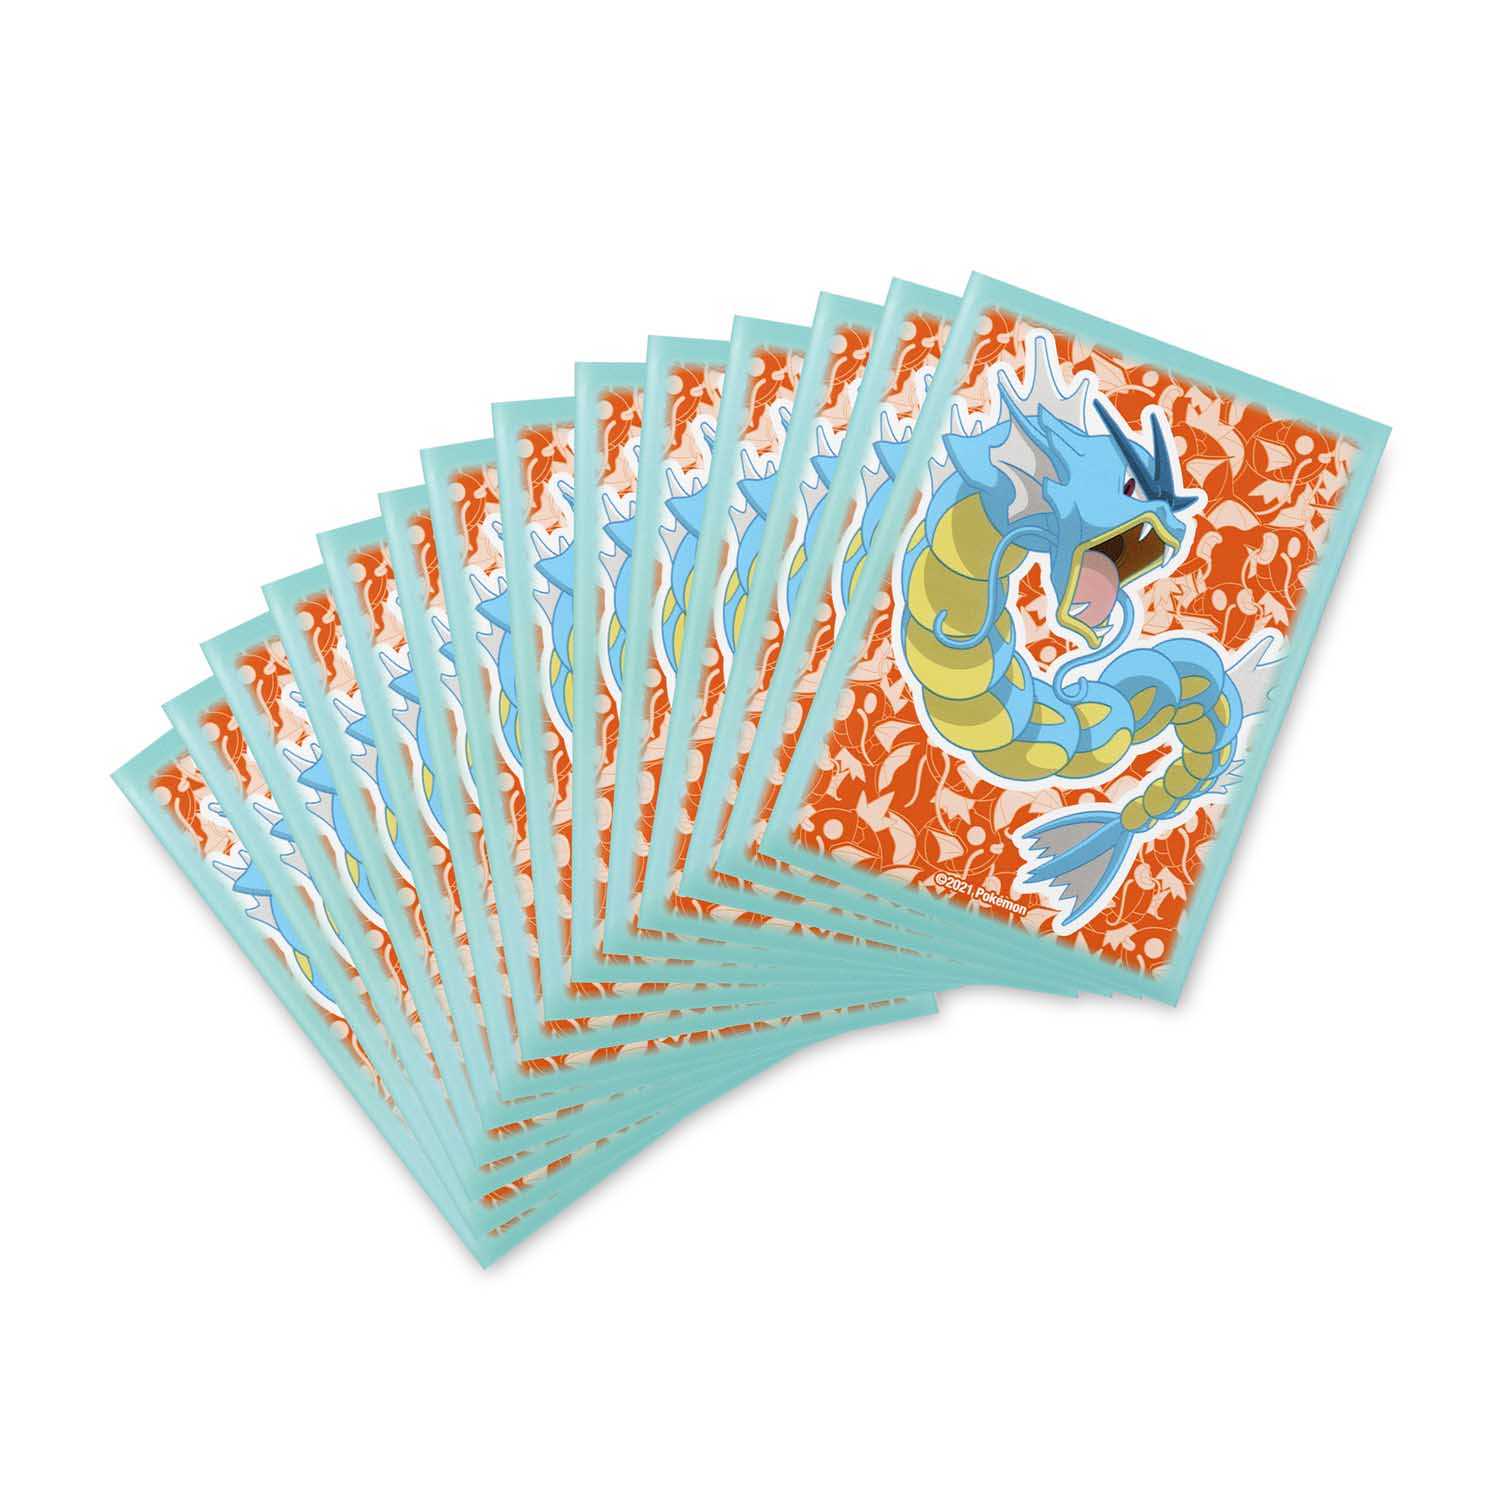 Gyarados Pokemon Trading Card Deck Sleeves 65 Ct 